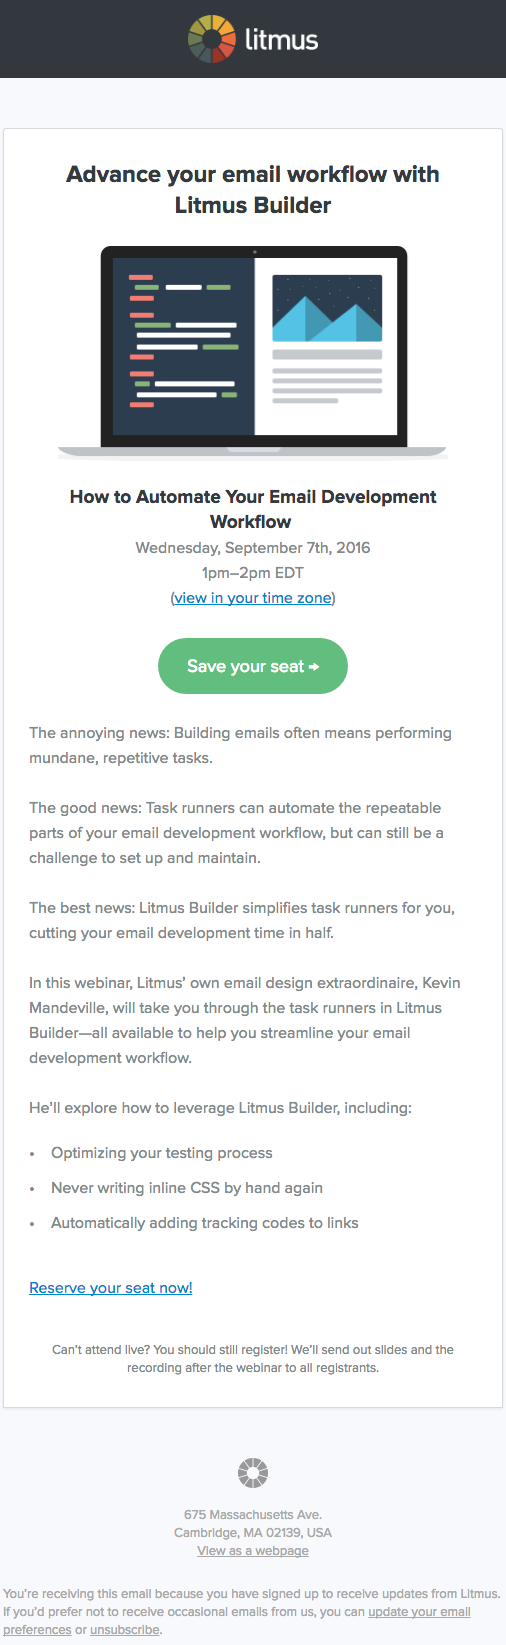 Мотивация к покупке в email-рассылке, кейс Litmus